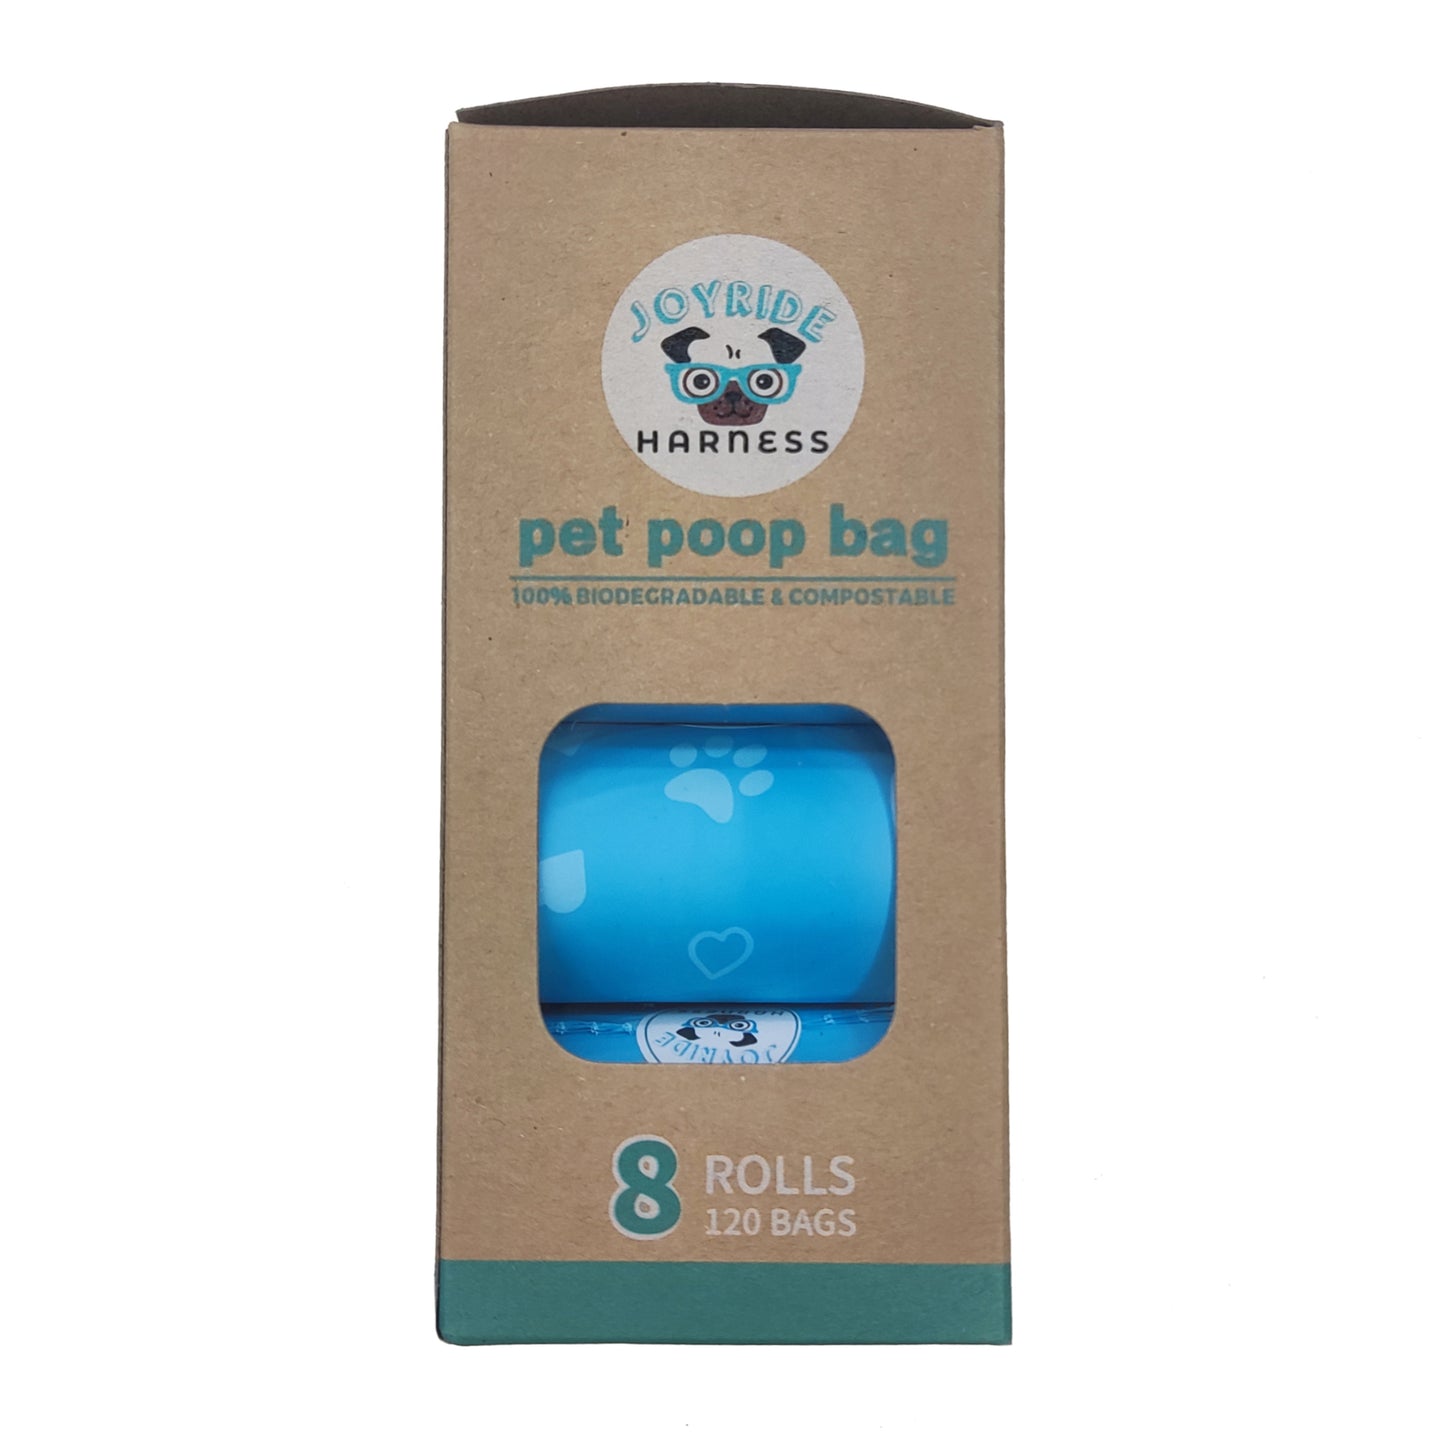 NEW Premium CORNSTARCH Biodegradable Poop Bags - 8 rolls (Leakproof)